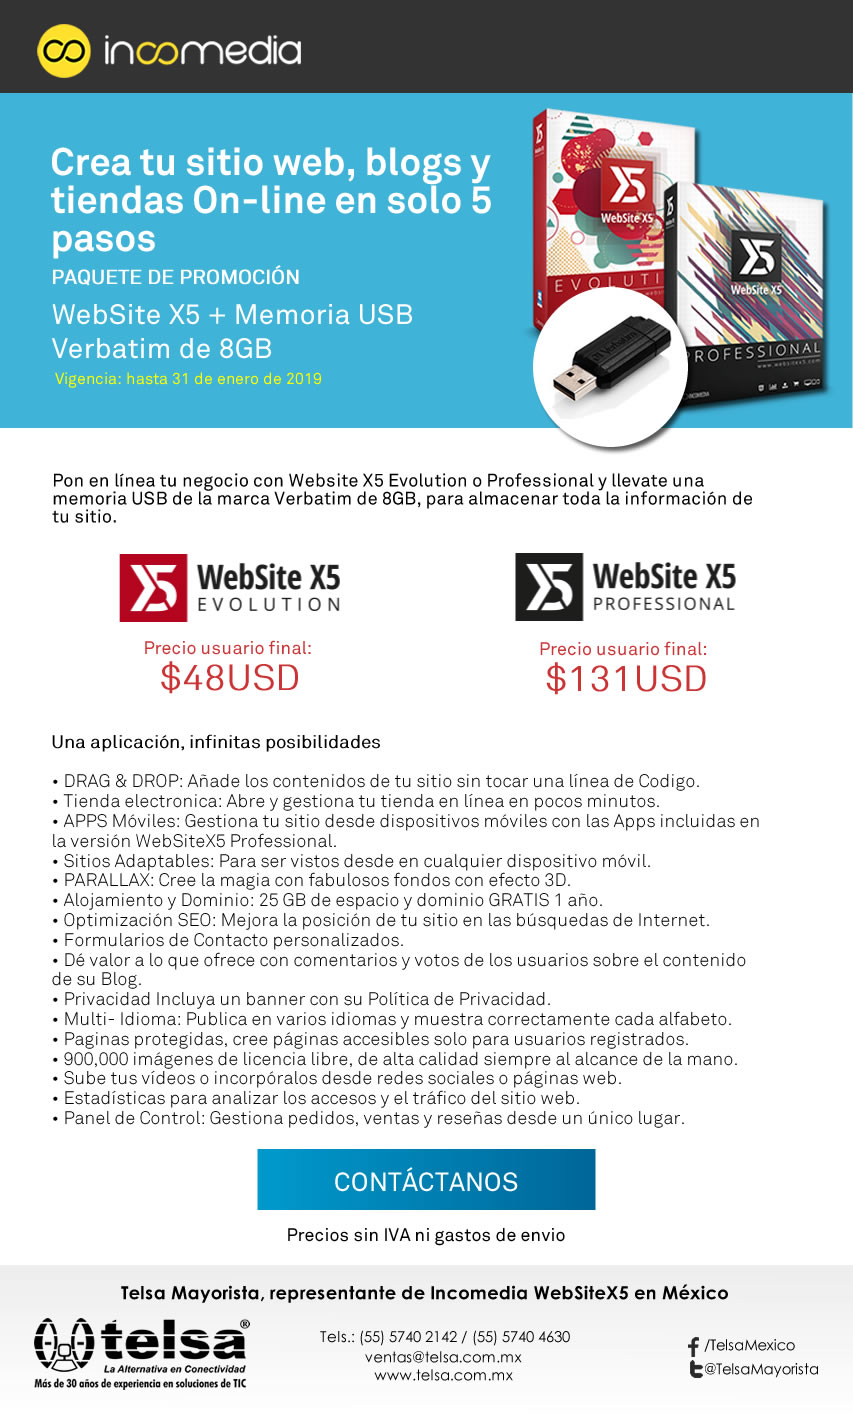 Paquete de promoción WebSite X5 + Memoria USB a precio especial, ¡Contáctanos!